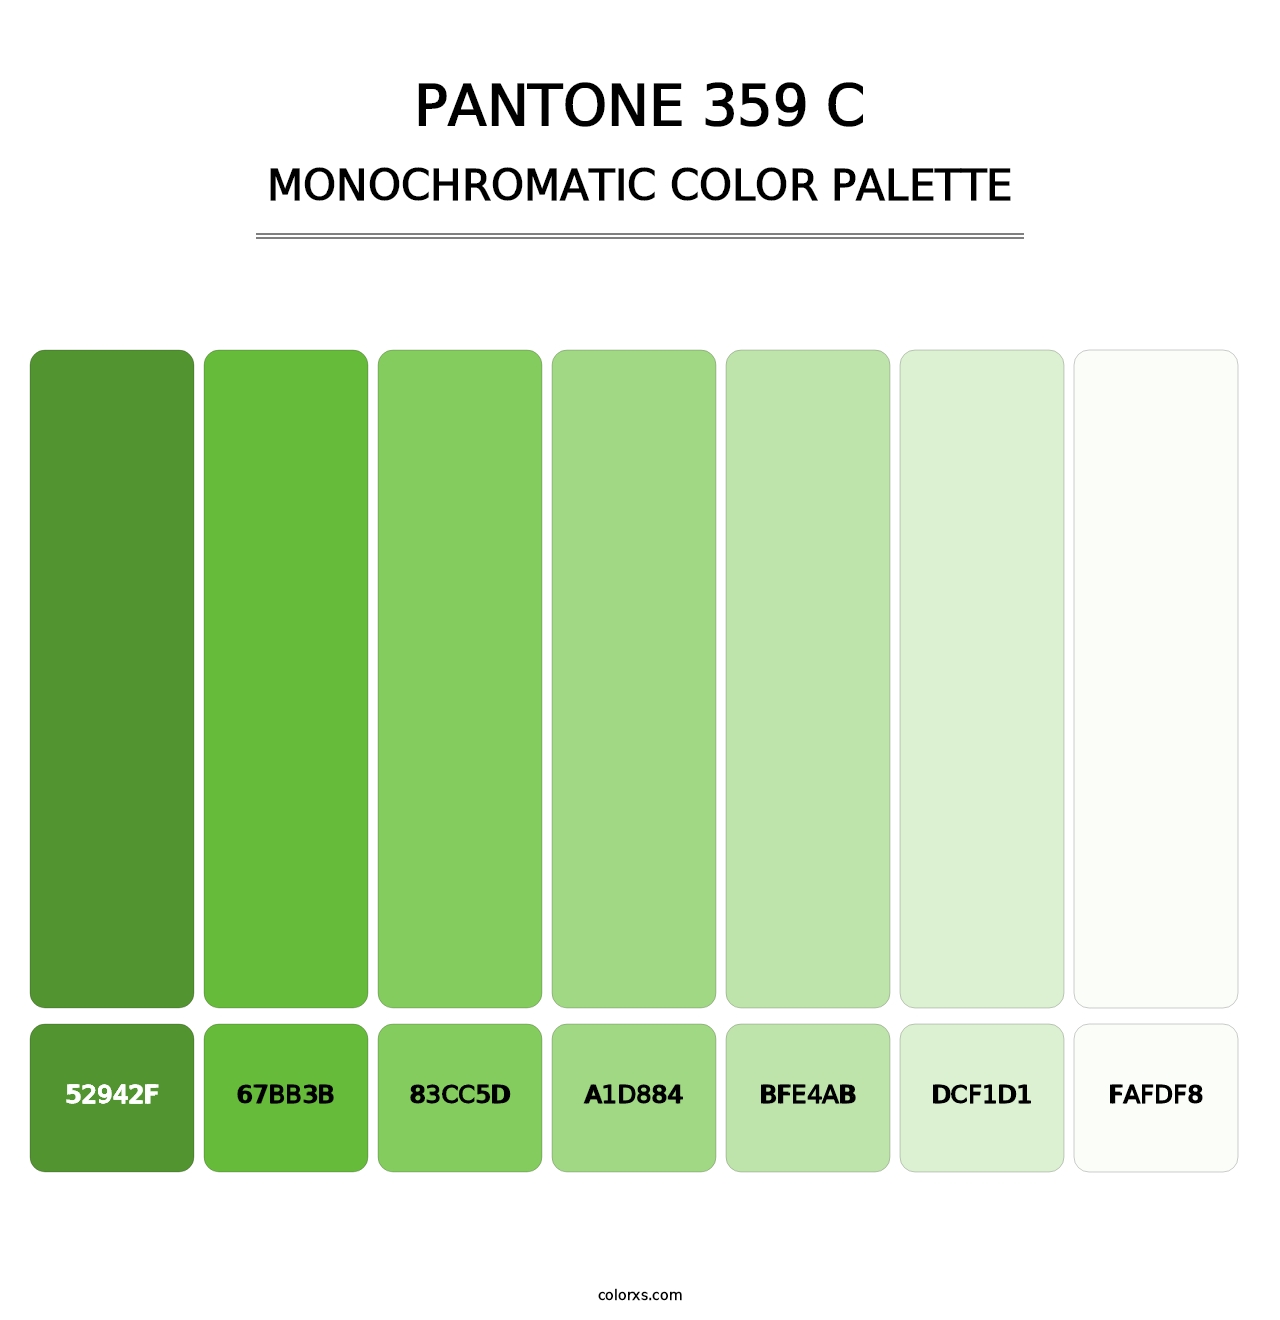 PANTONE 359 C - Monochromatic Color Palette